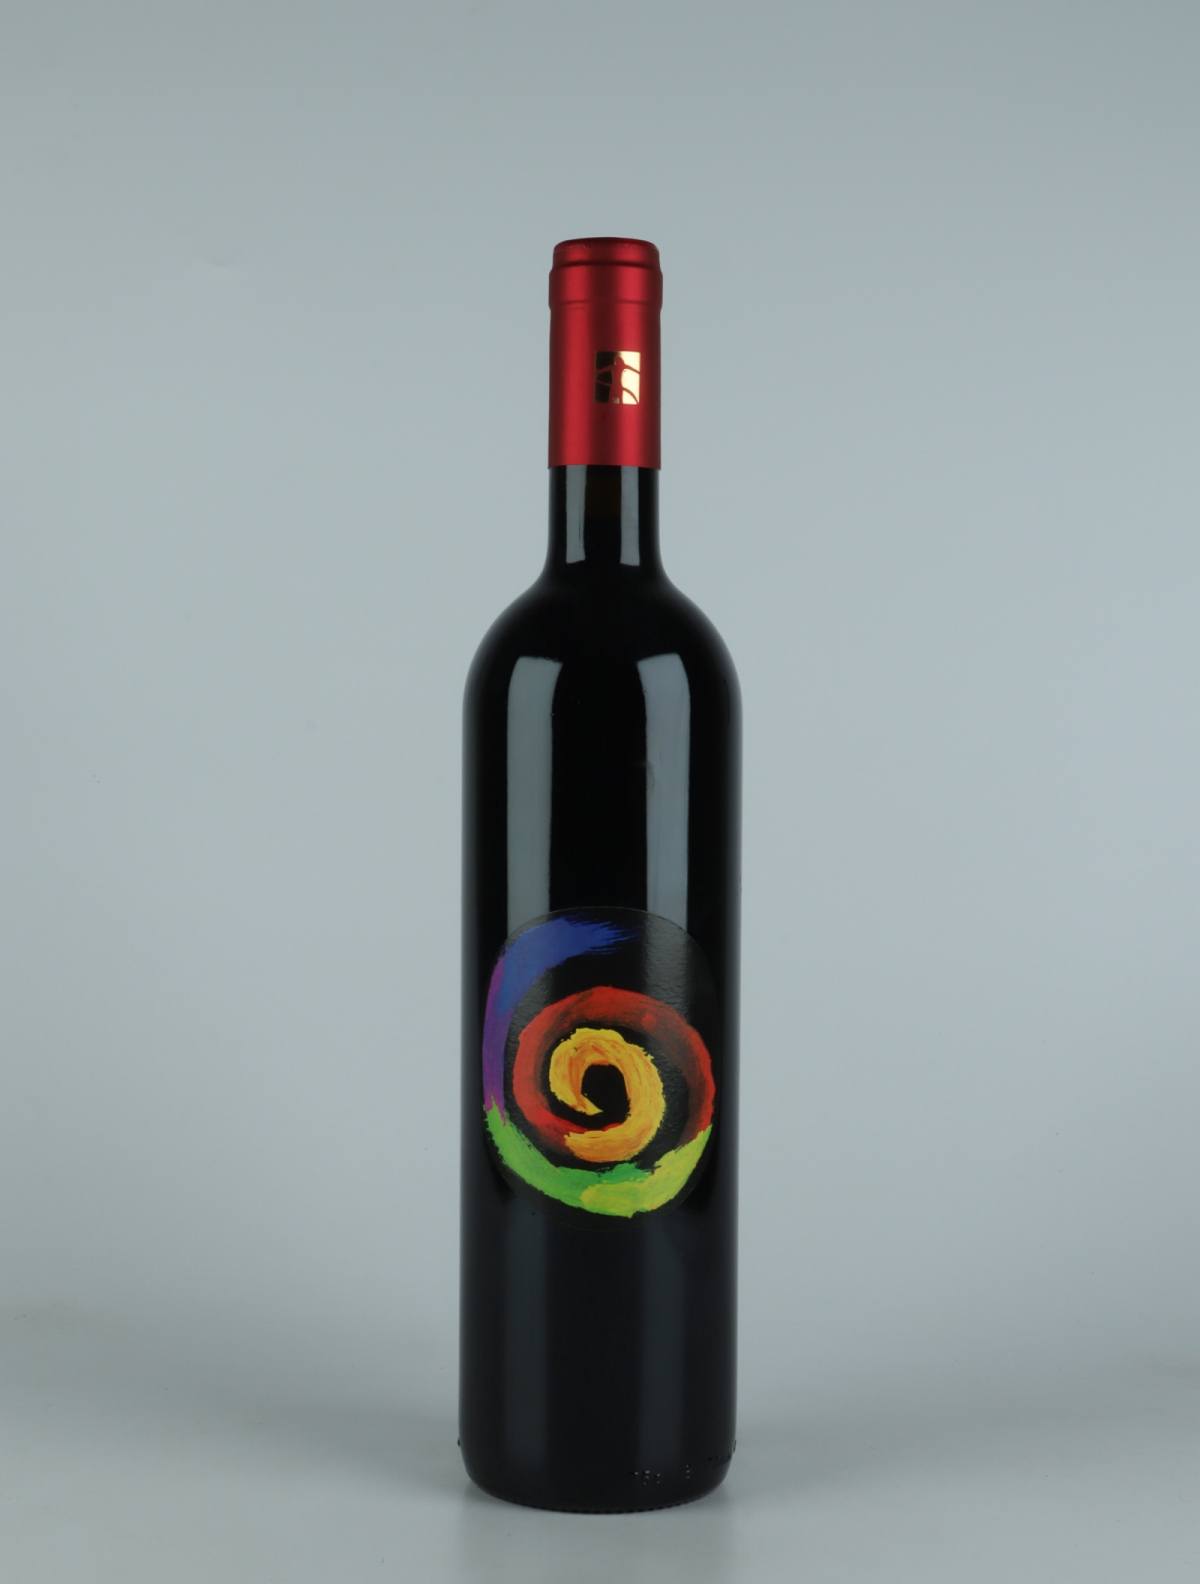 En flaske 2019 Rosso...se Rødvin fra Tenuta Selvadolce, Ligurien i Italien